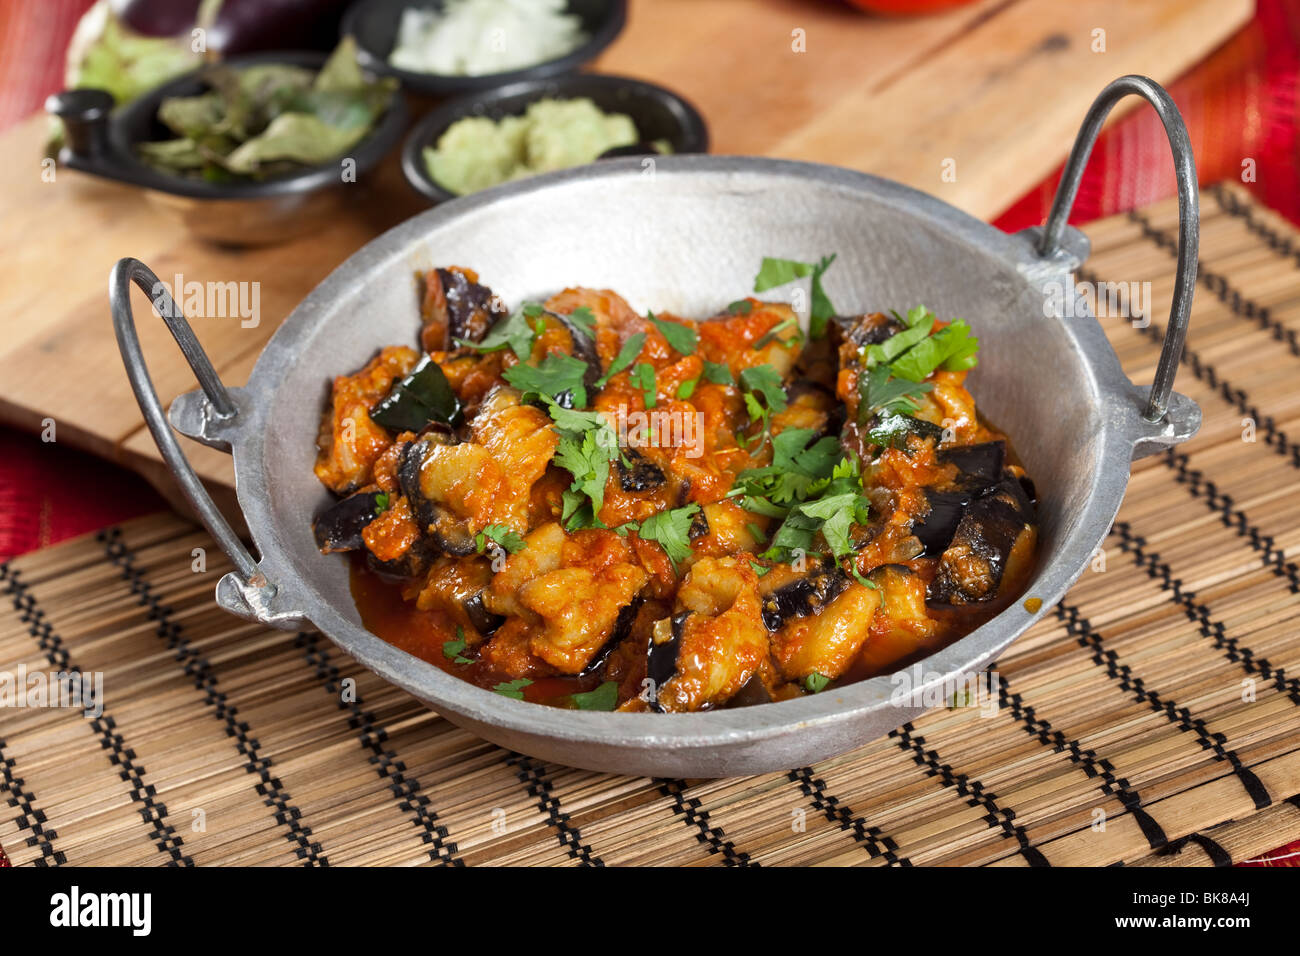 Le style indien aubergine plat avec de la coriandre fraîche sur le dessus Banque D'Images